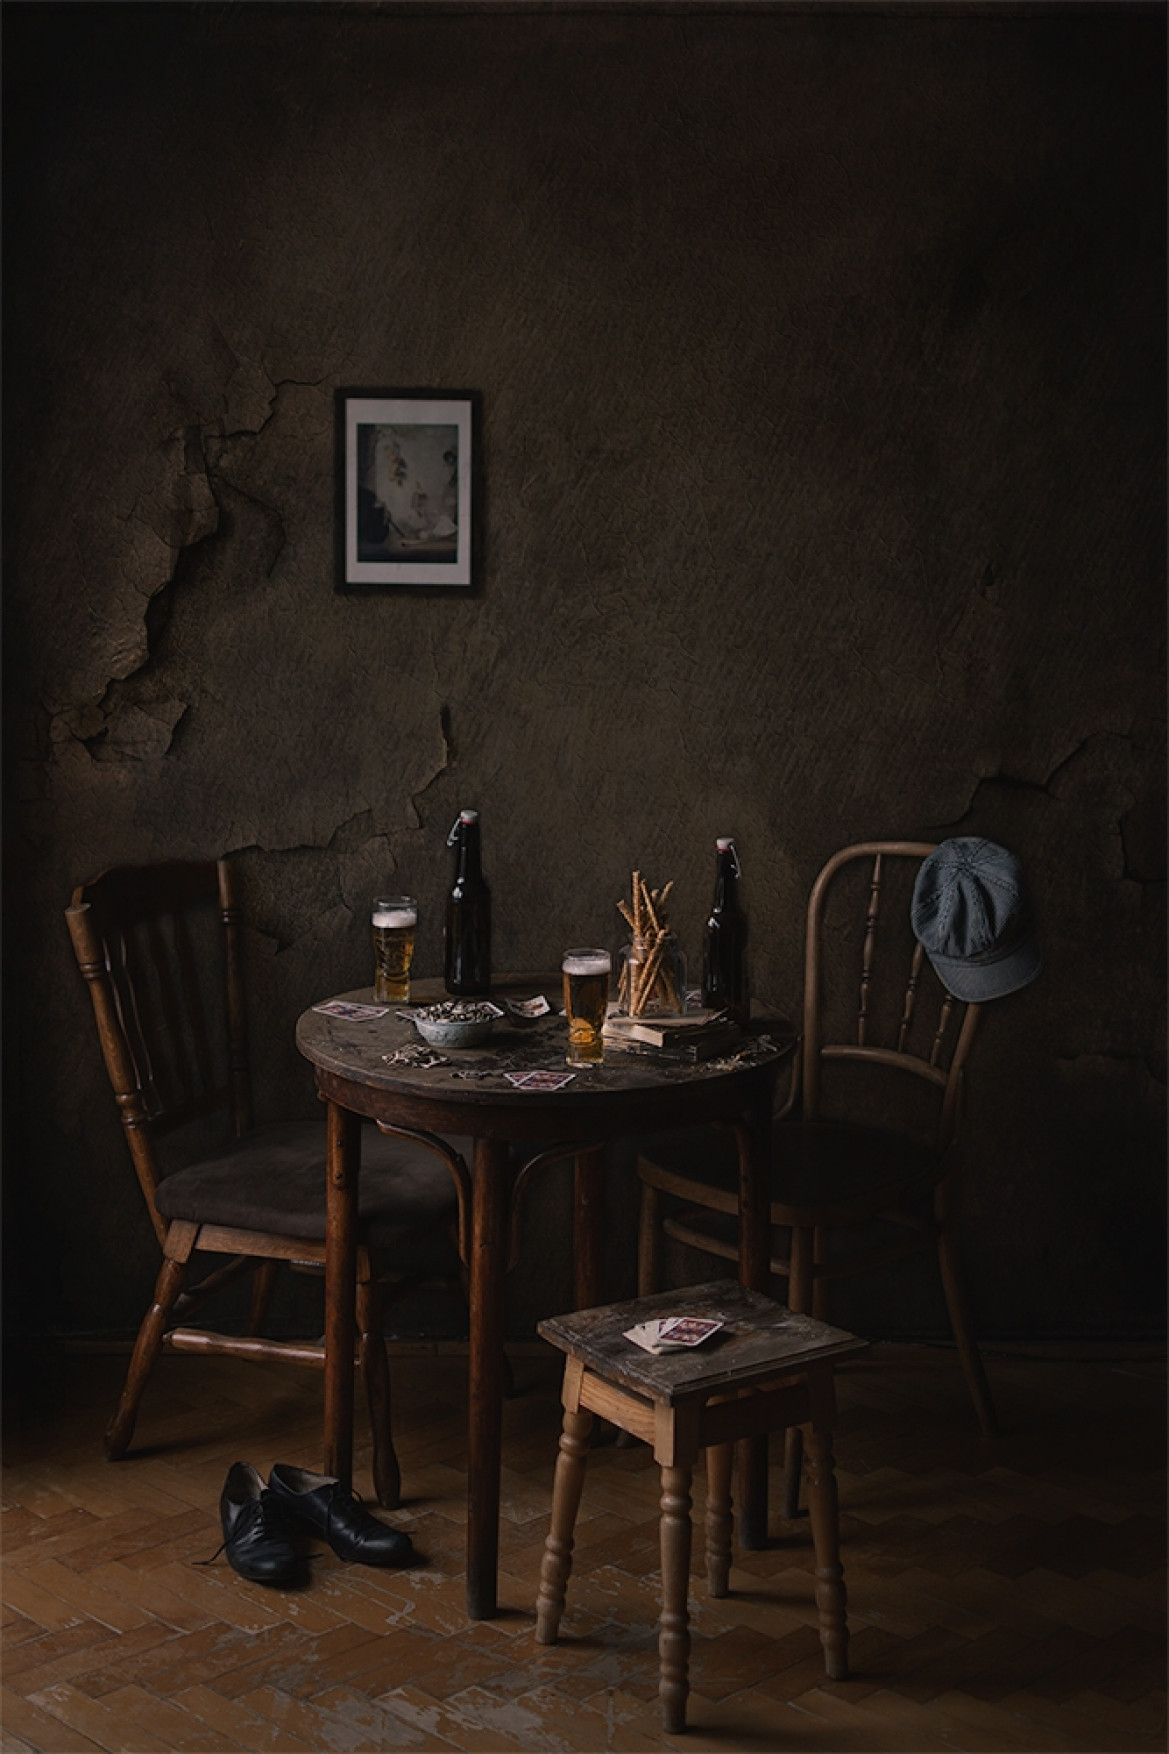 fot. Emilia Konkol-Pastuszak, "Intimate Spaces", brązowe wyróżnienie w kat. Portfolio/Fine Art / Moscow International Foto Awards 2021